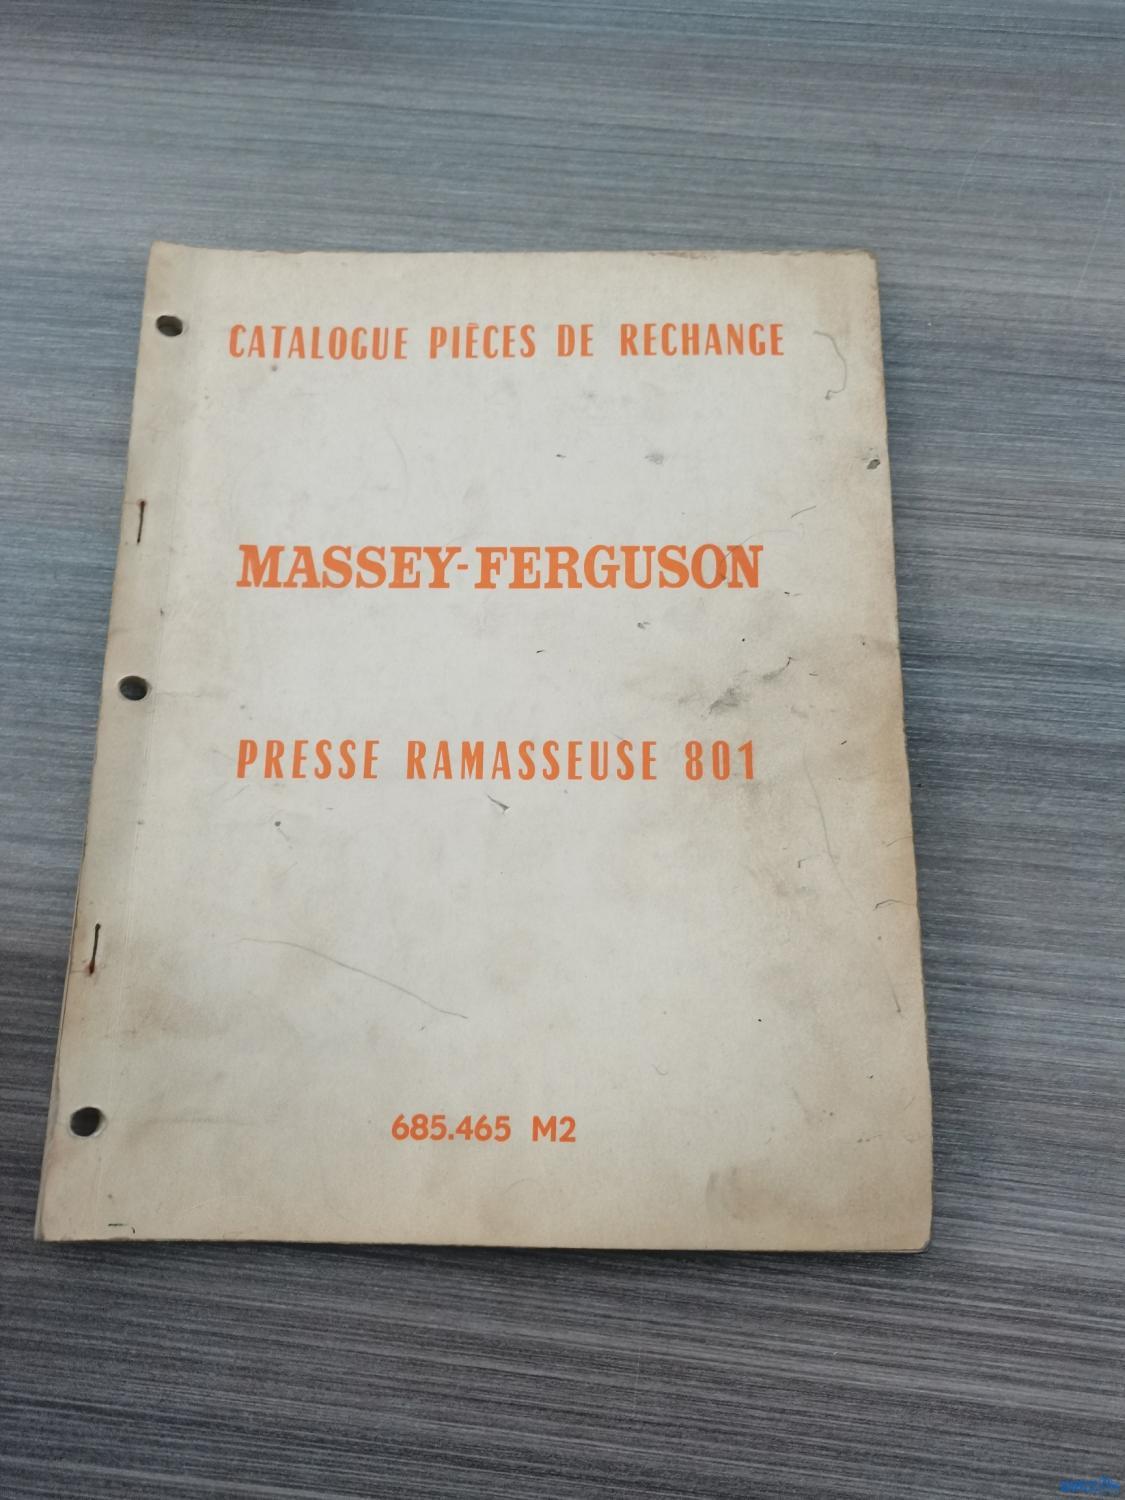 Catalogue de pièces détachées pour presse ramasseuse 801 Massey-Ferguson